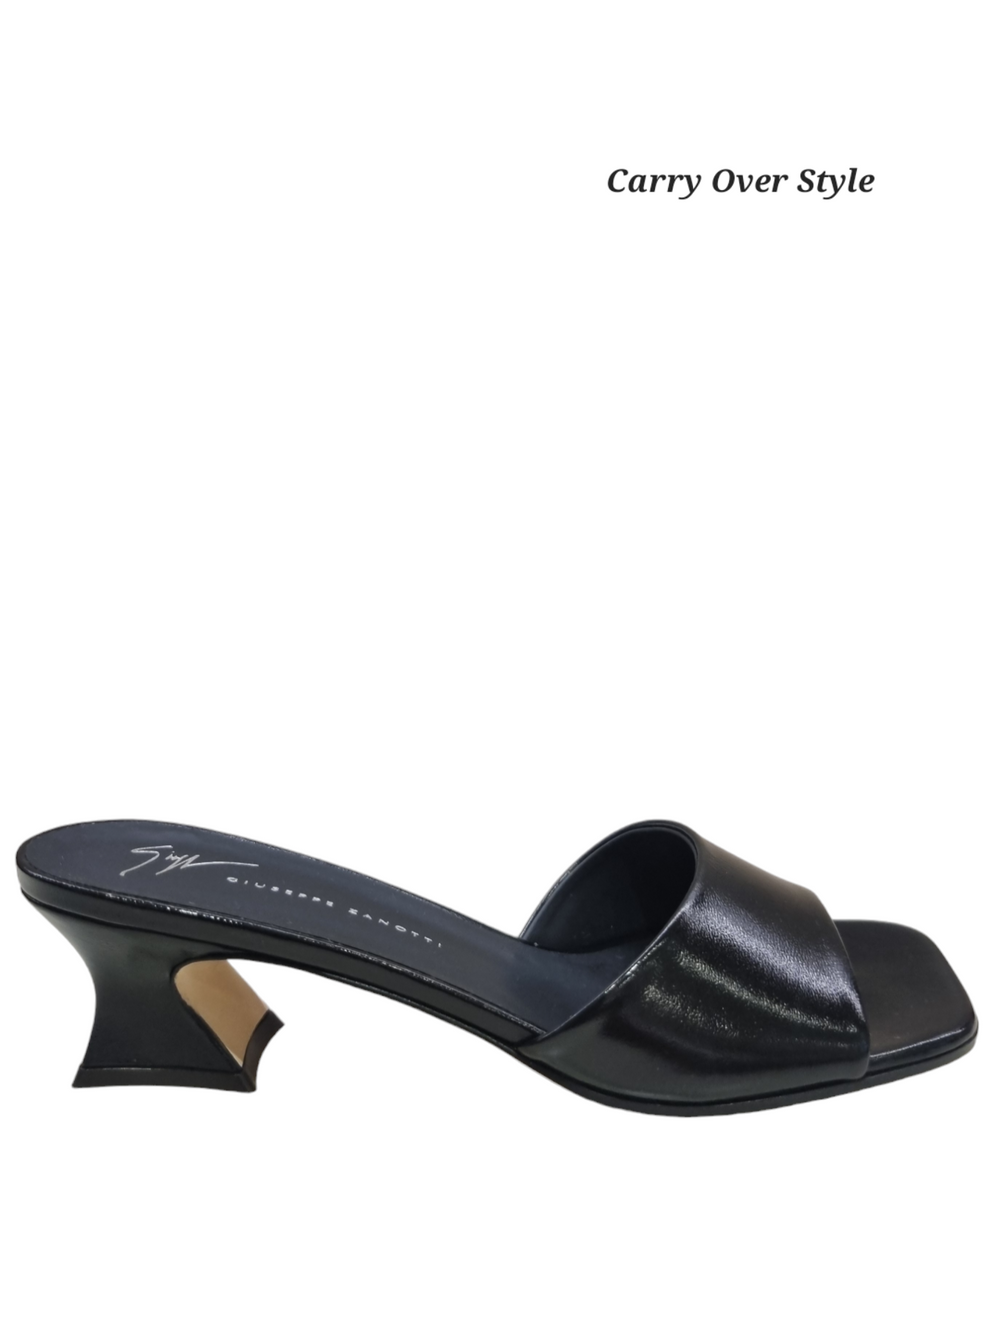 Solhene Shiny Leather Slip-On Mules